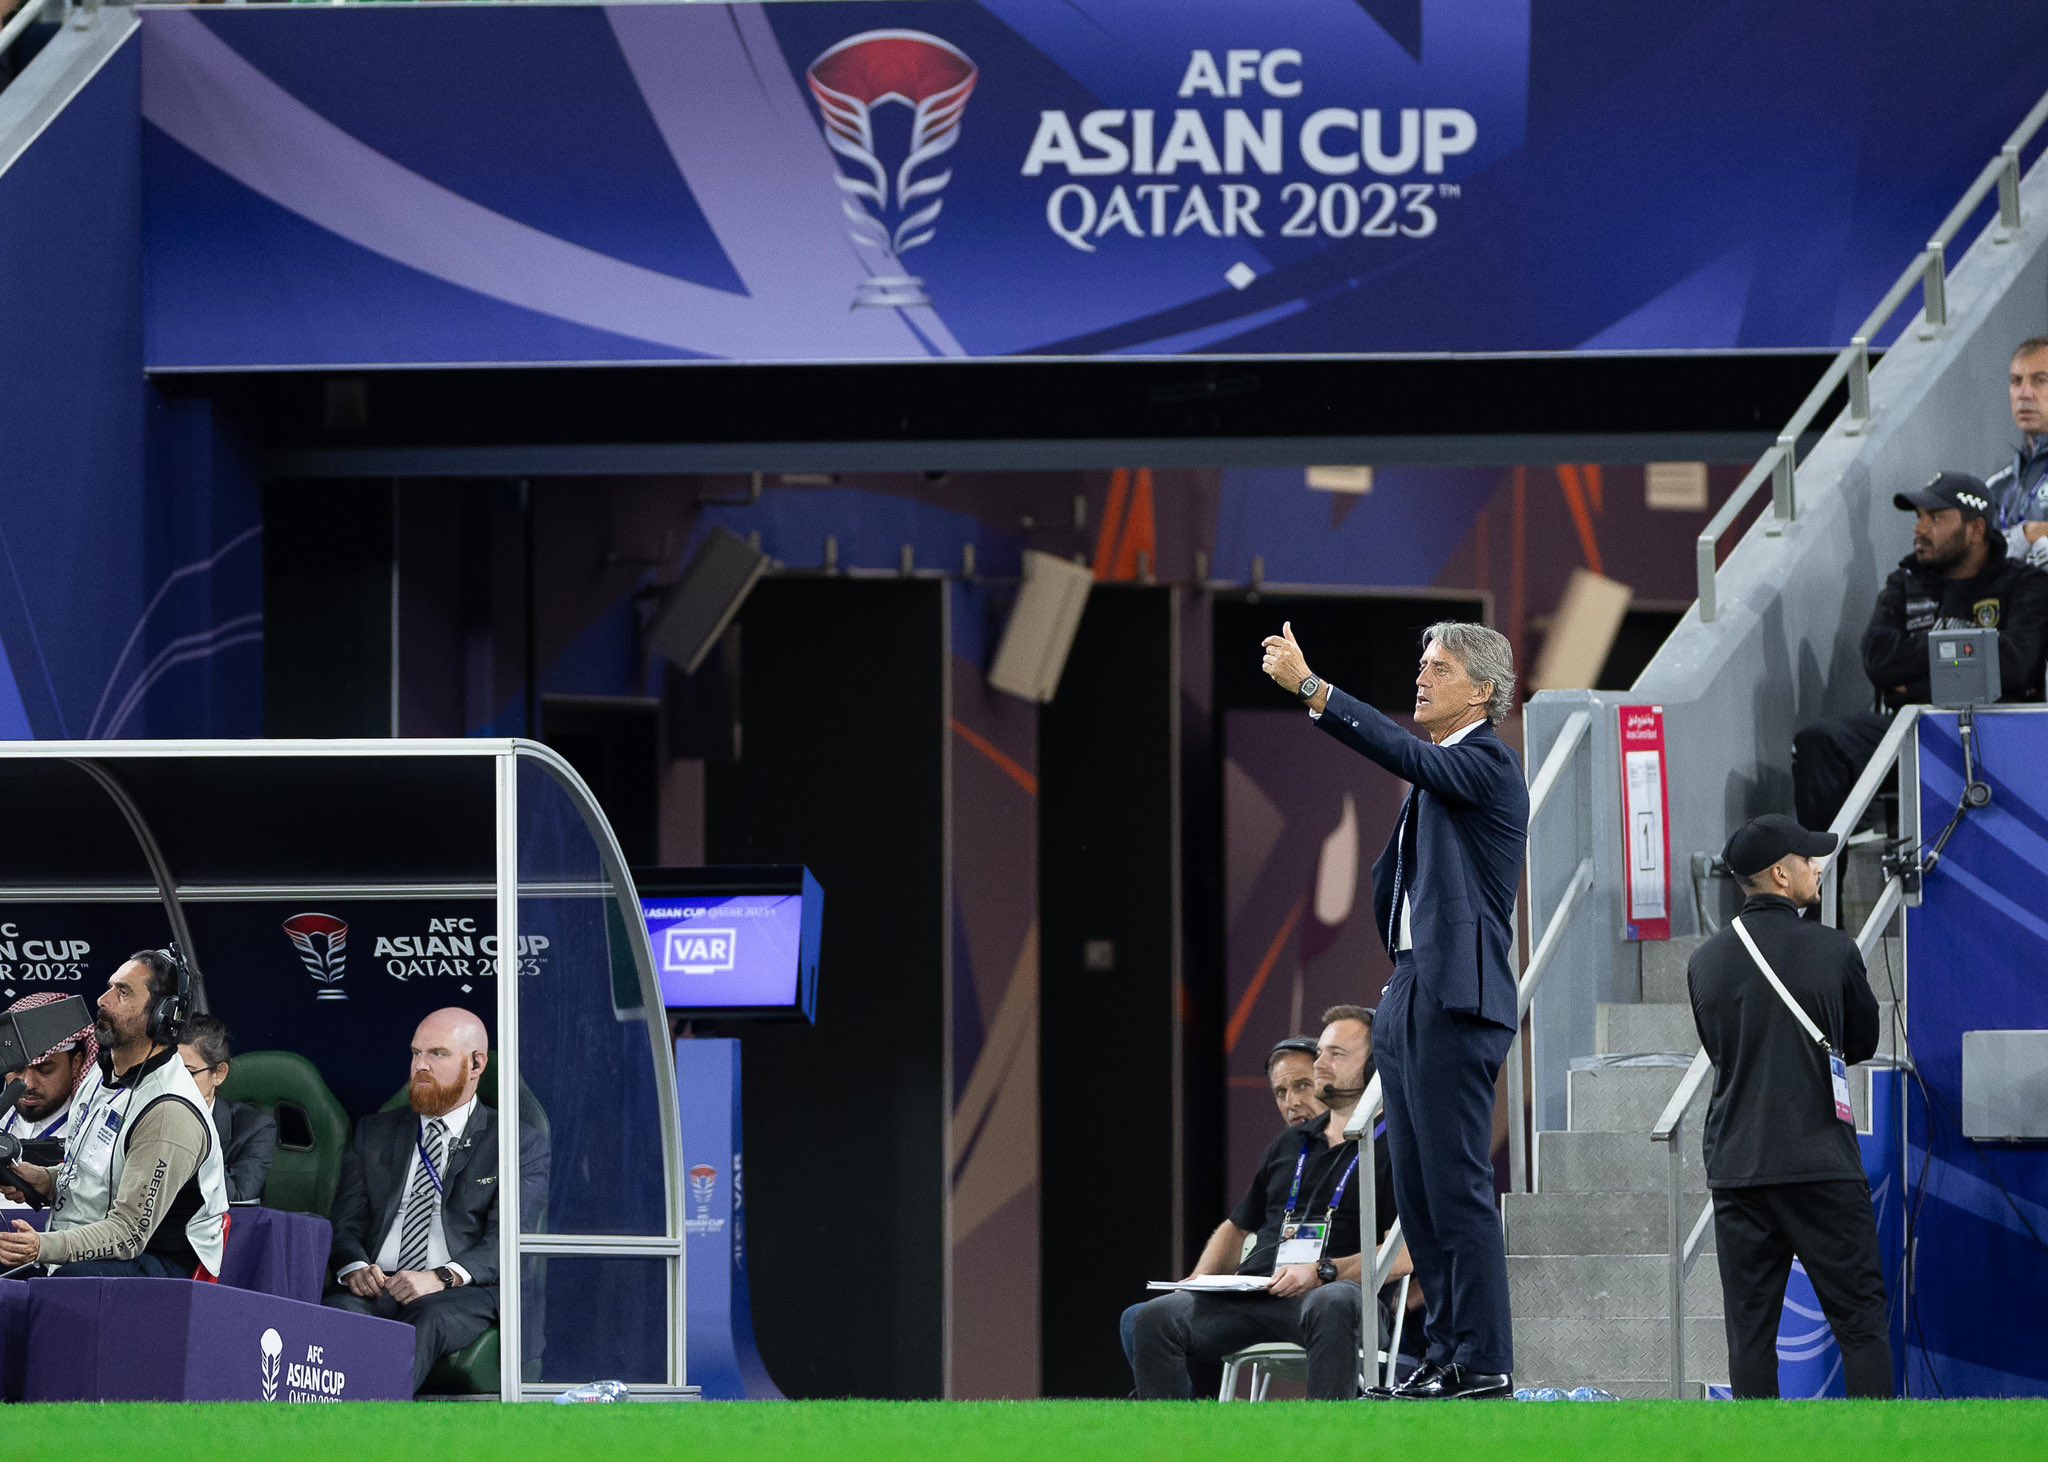 مانشيني: سنسجل هدفين في كوريا الجنوبية وحصد البطولة يتطلب الفوز على الفرق القوية